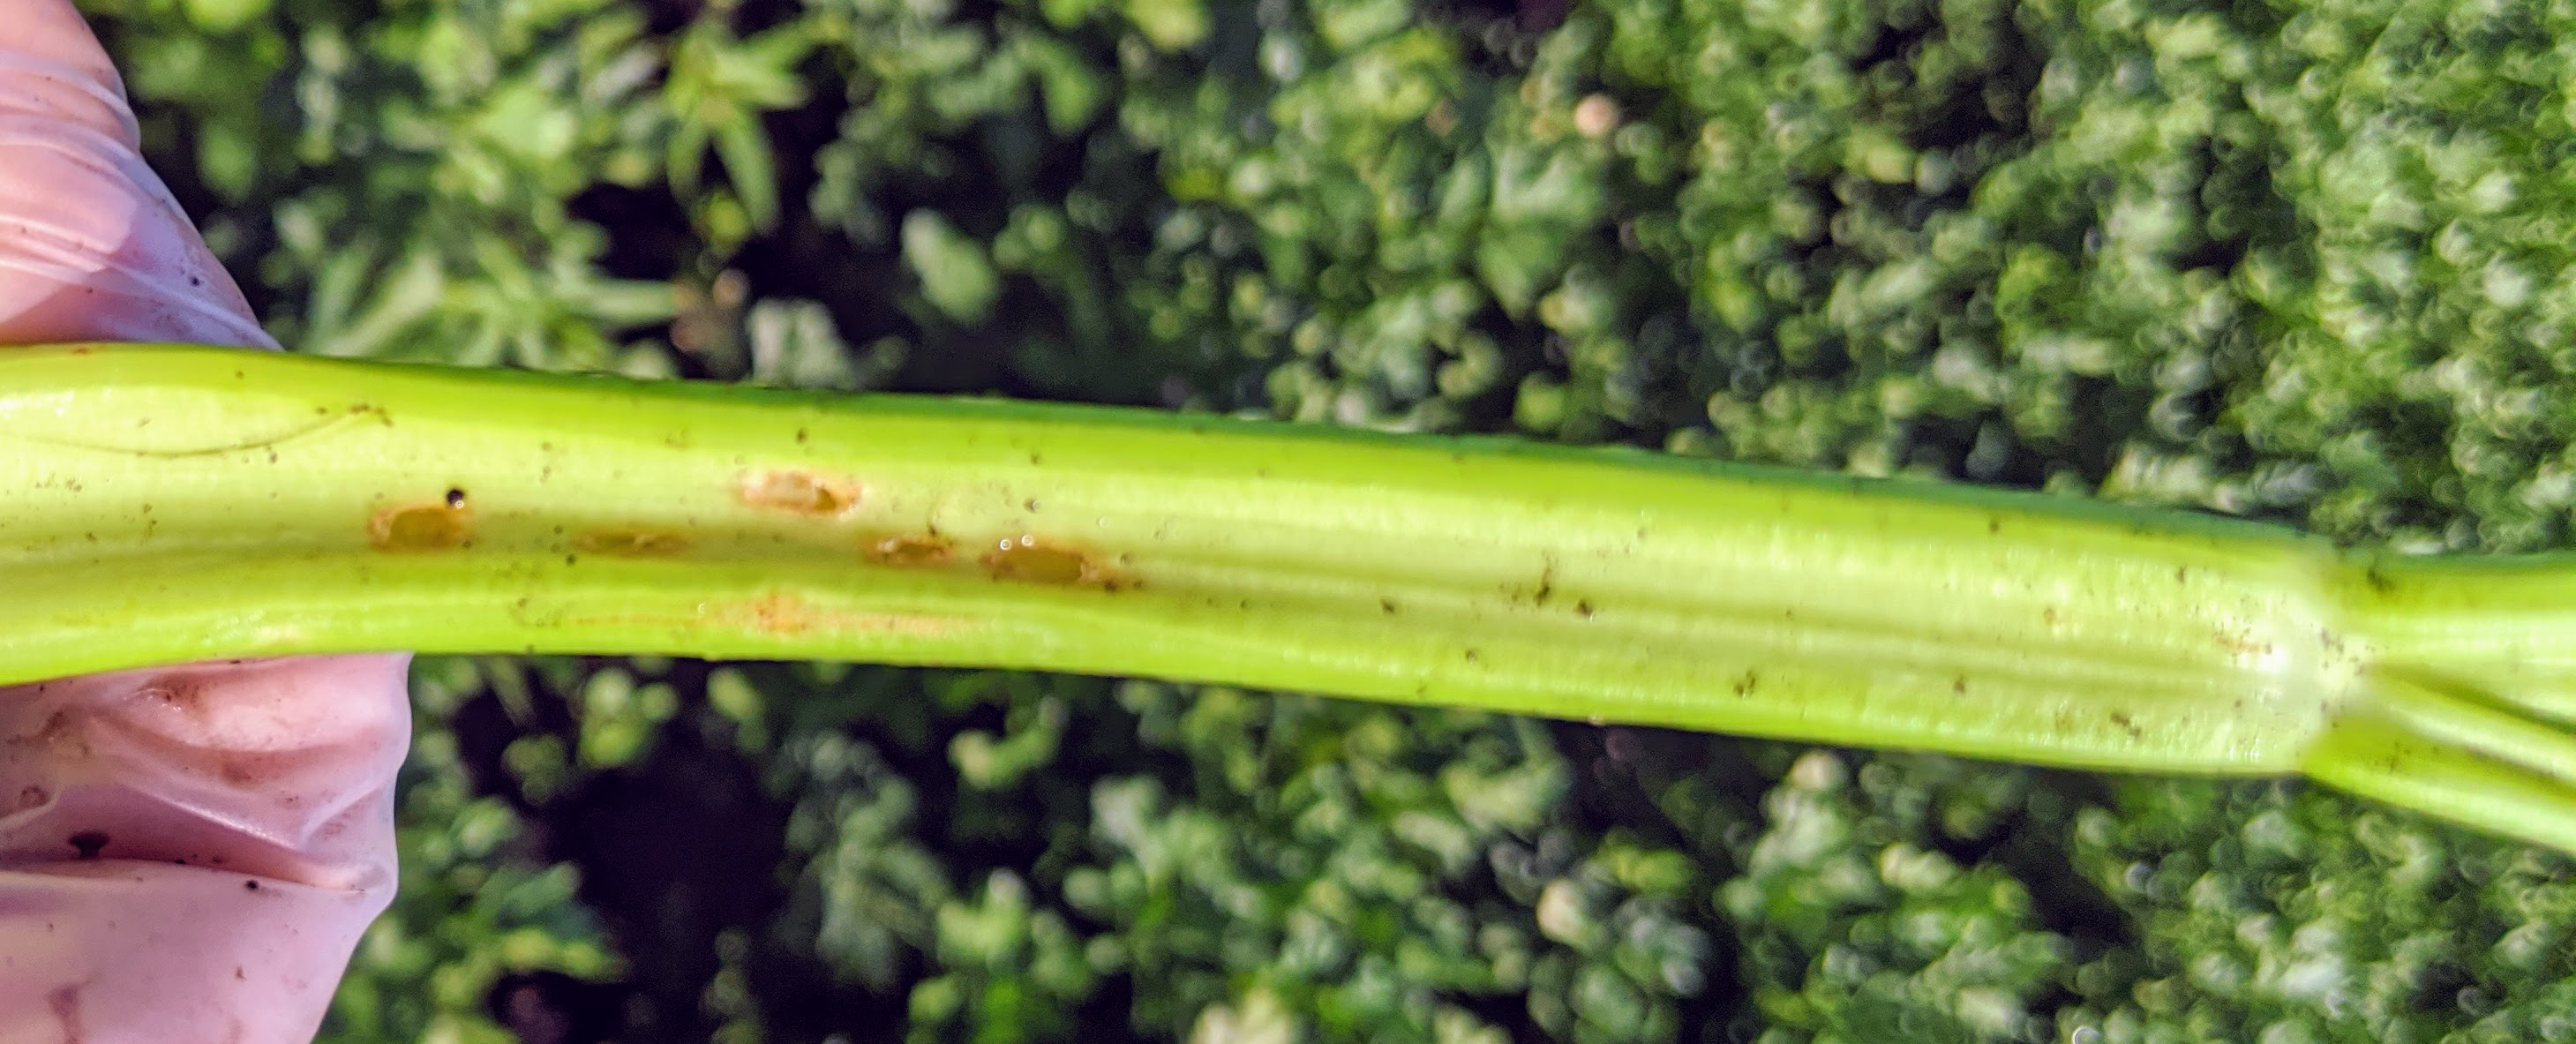 Tarnished plant bug damage in celery